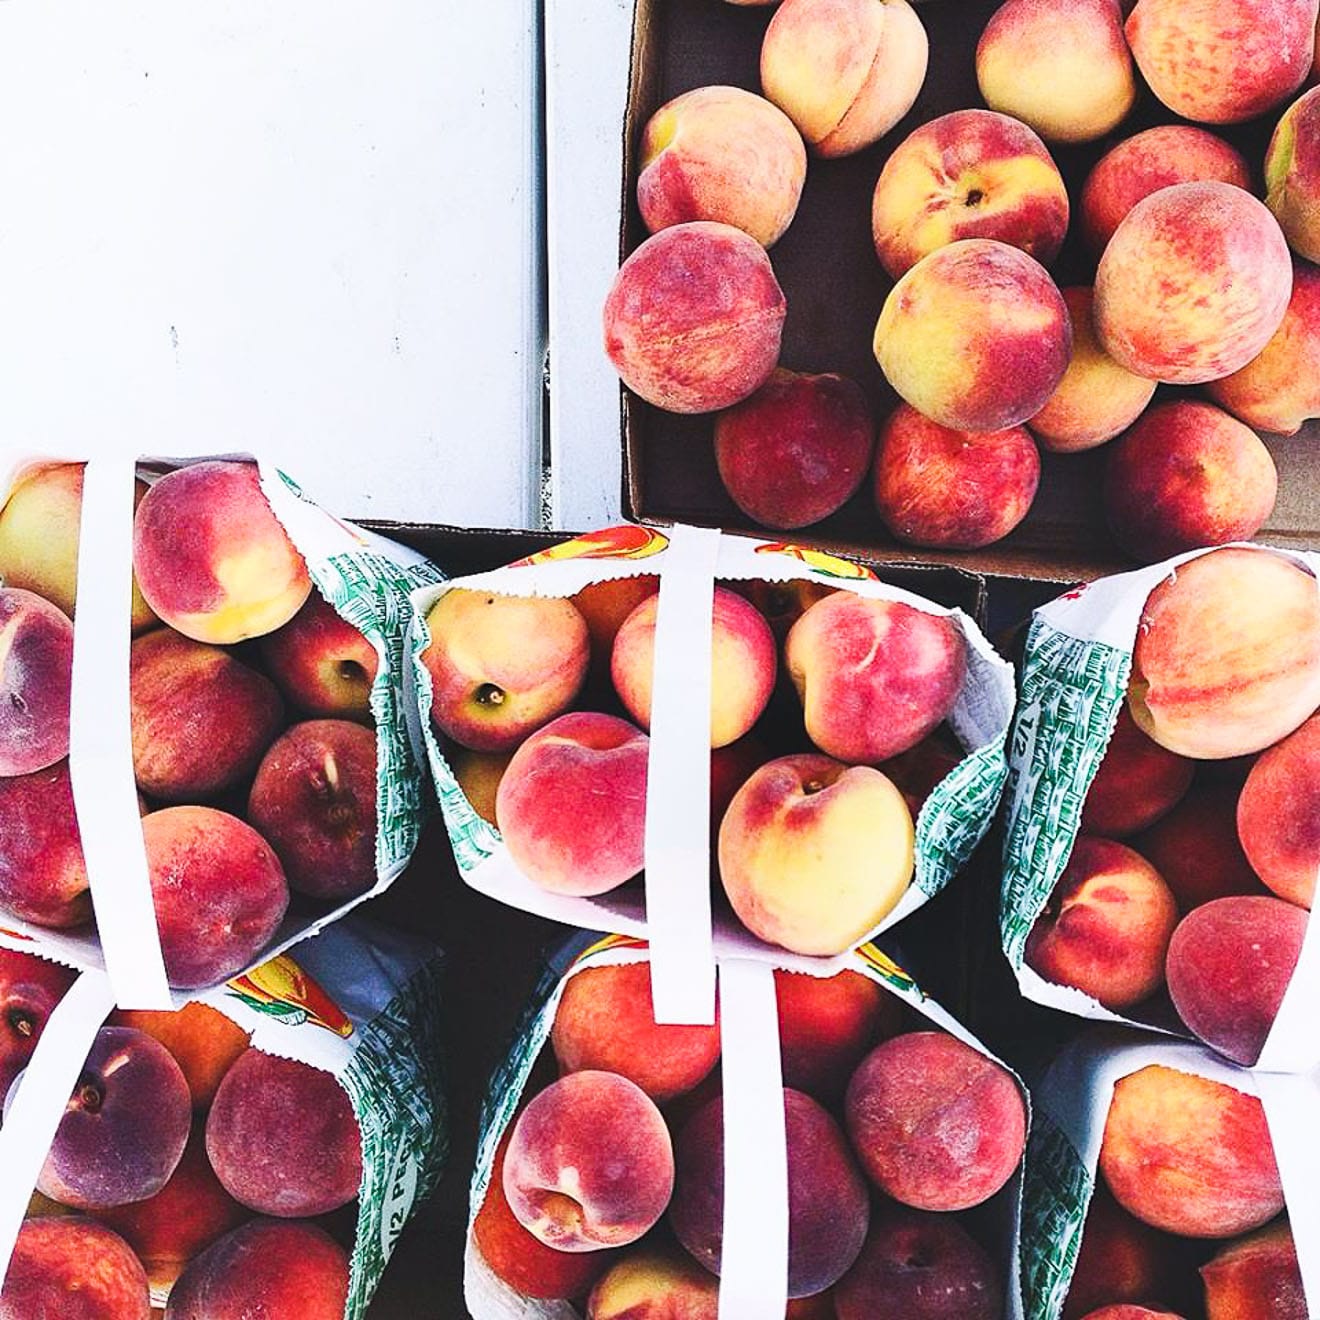 peaches in farm bags